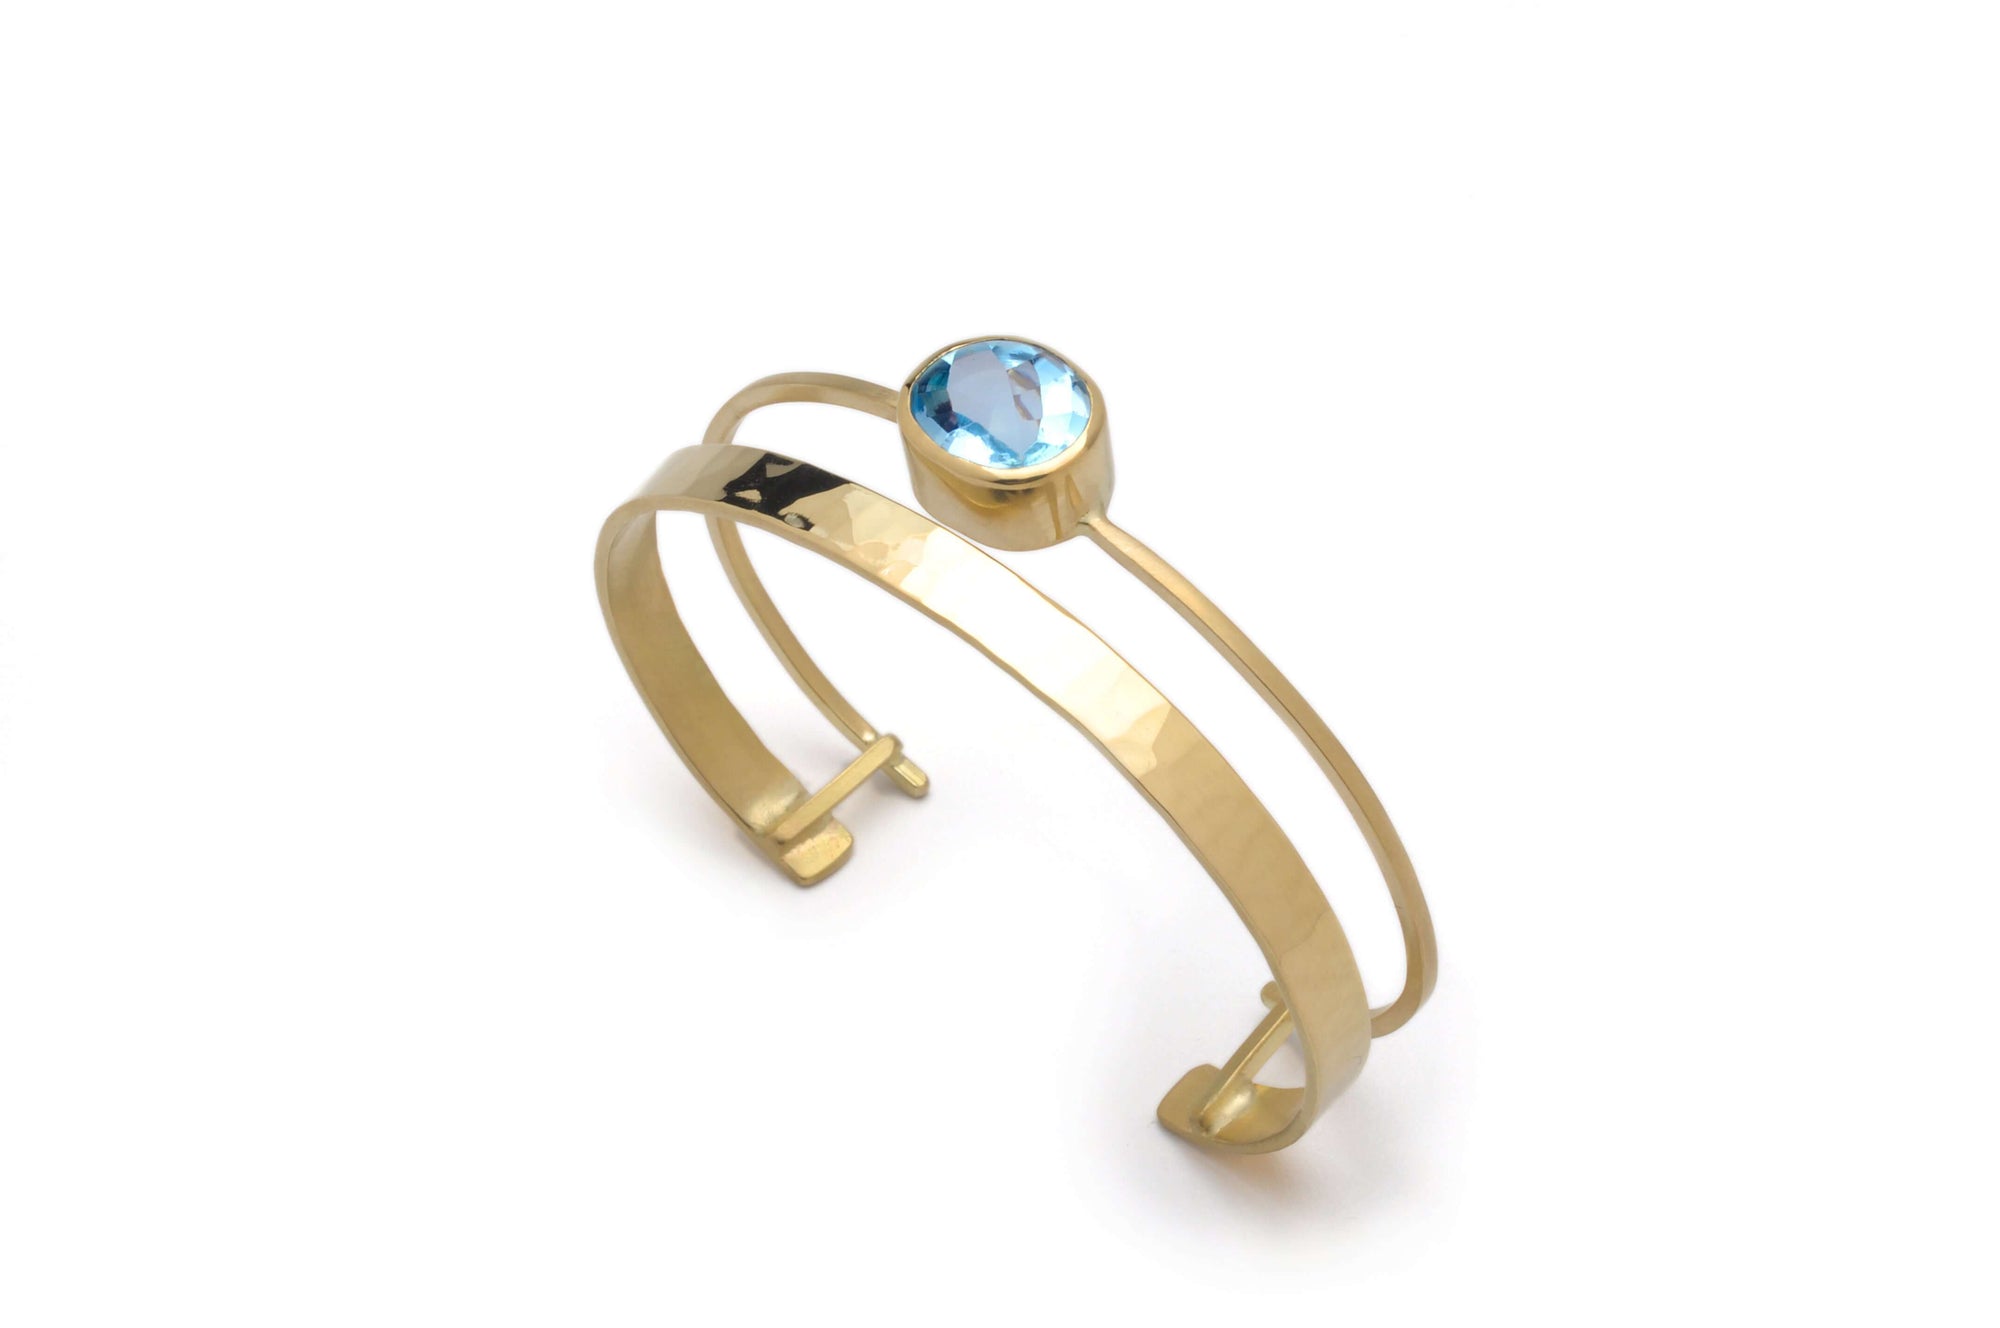 A 18k gold cuff bracelet with sky blue topaz